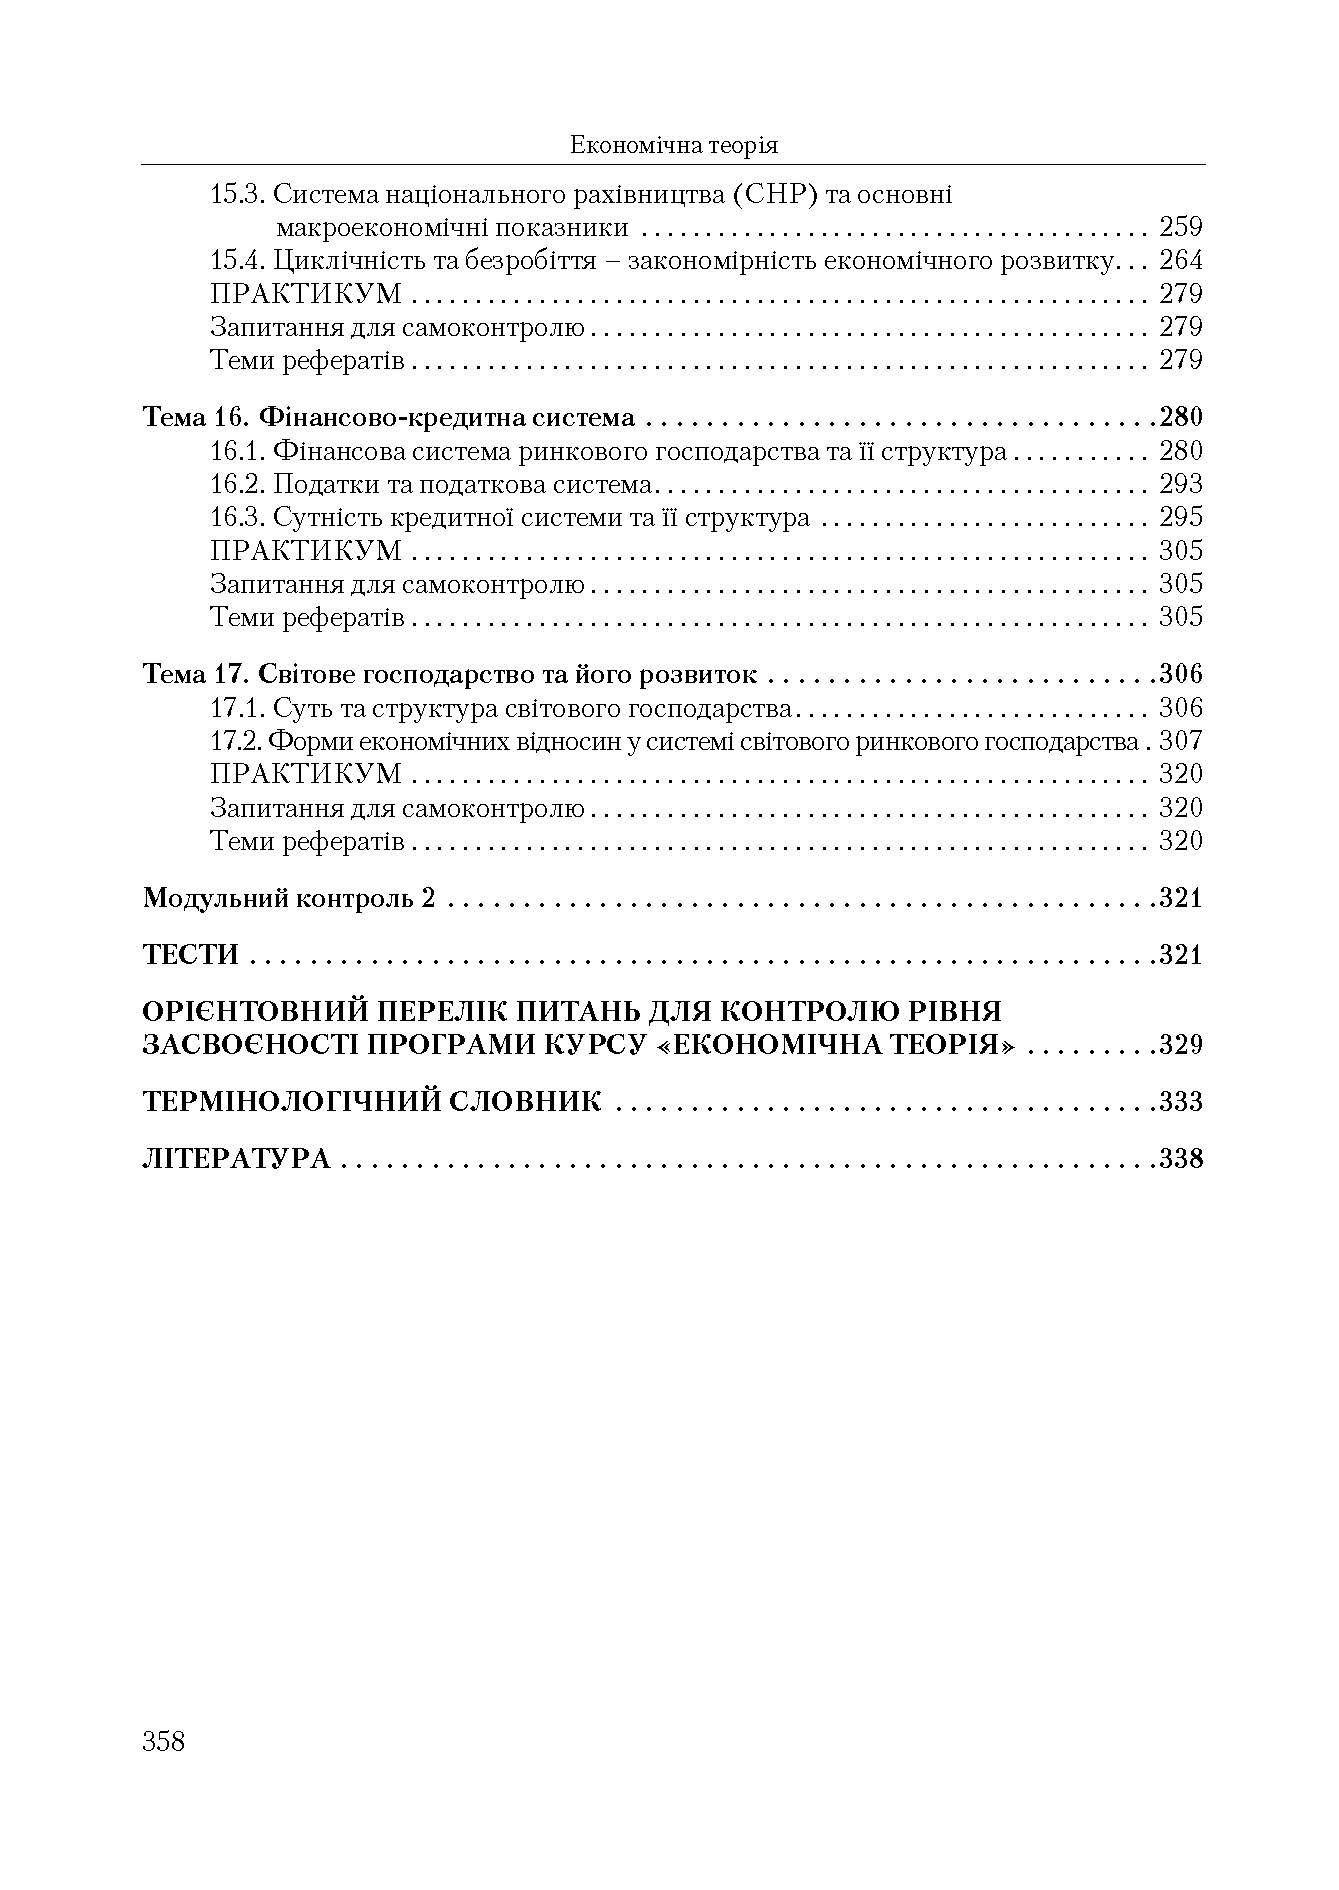 Економічна теорія. Політекономія. 2-ге видання. (2019 год)). Автор — Семененко В.М.. 